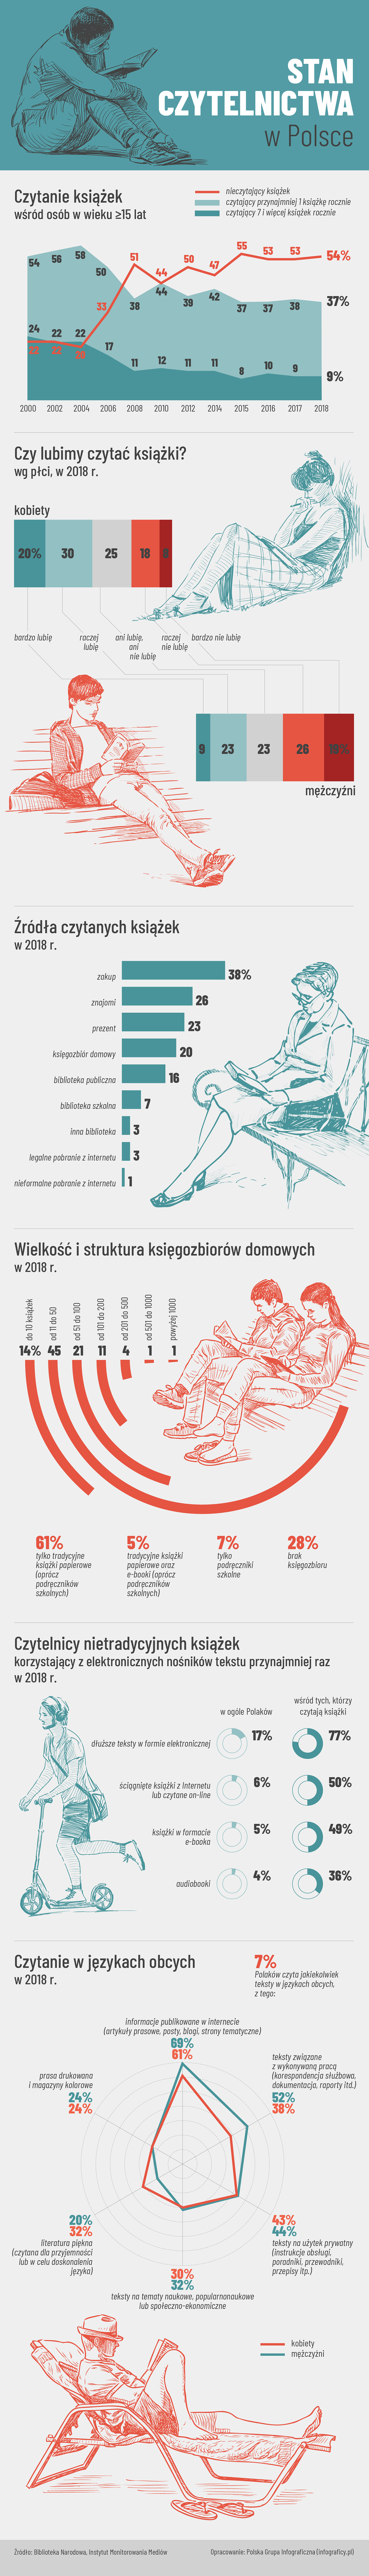 Czytelnictwo w Polsce